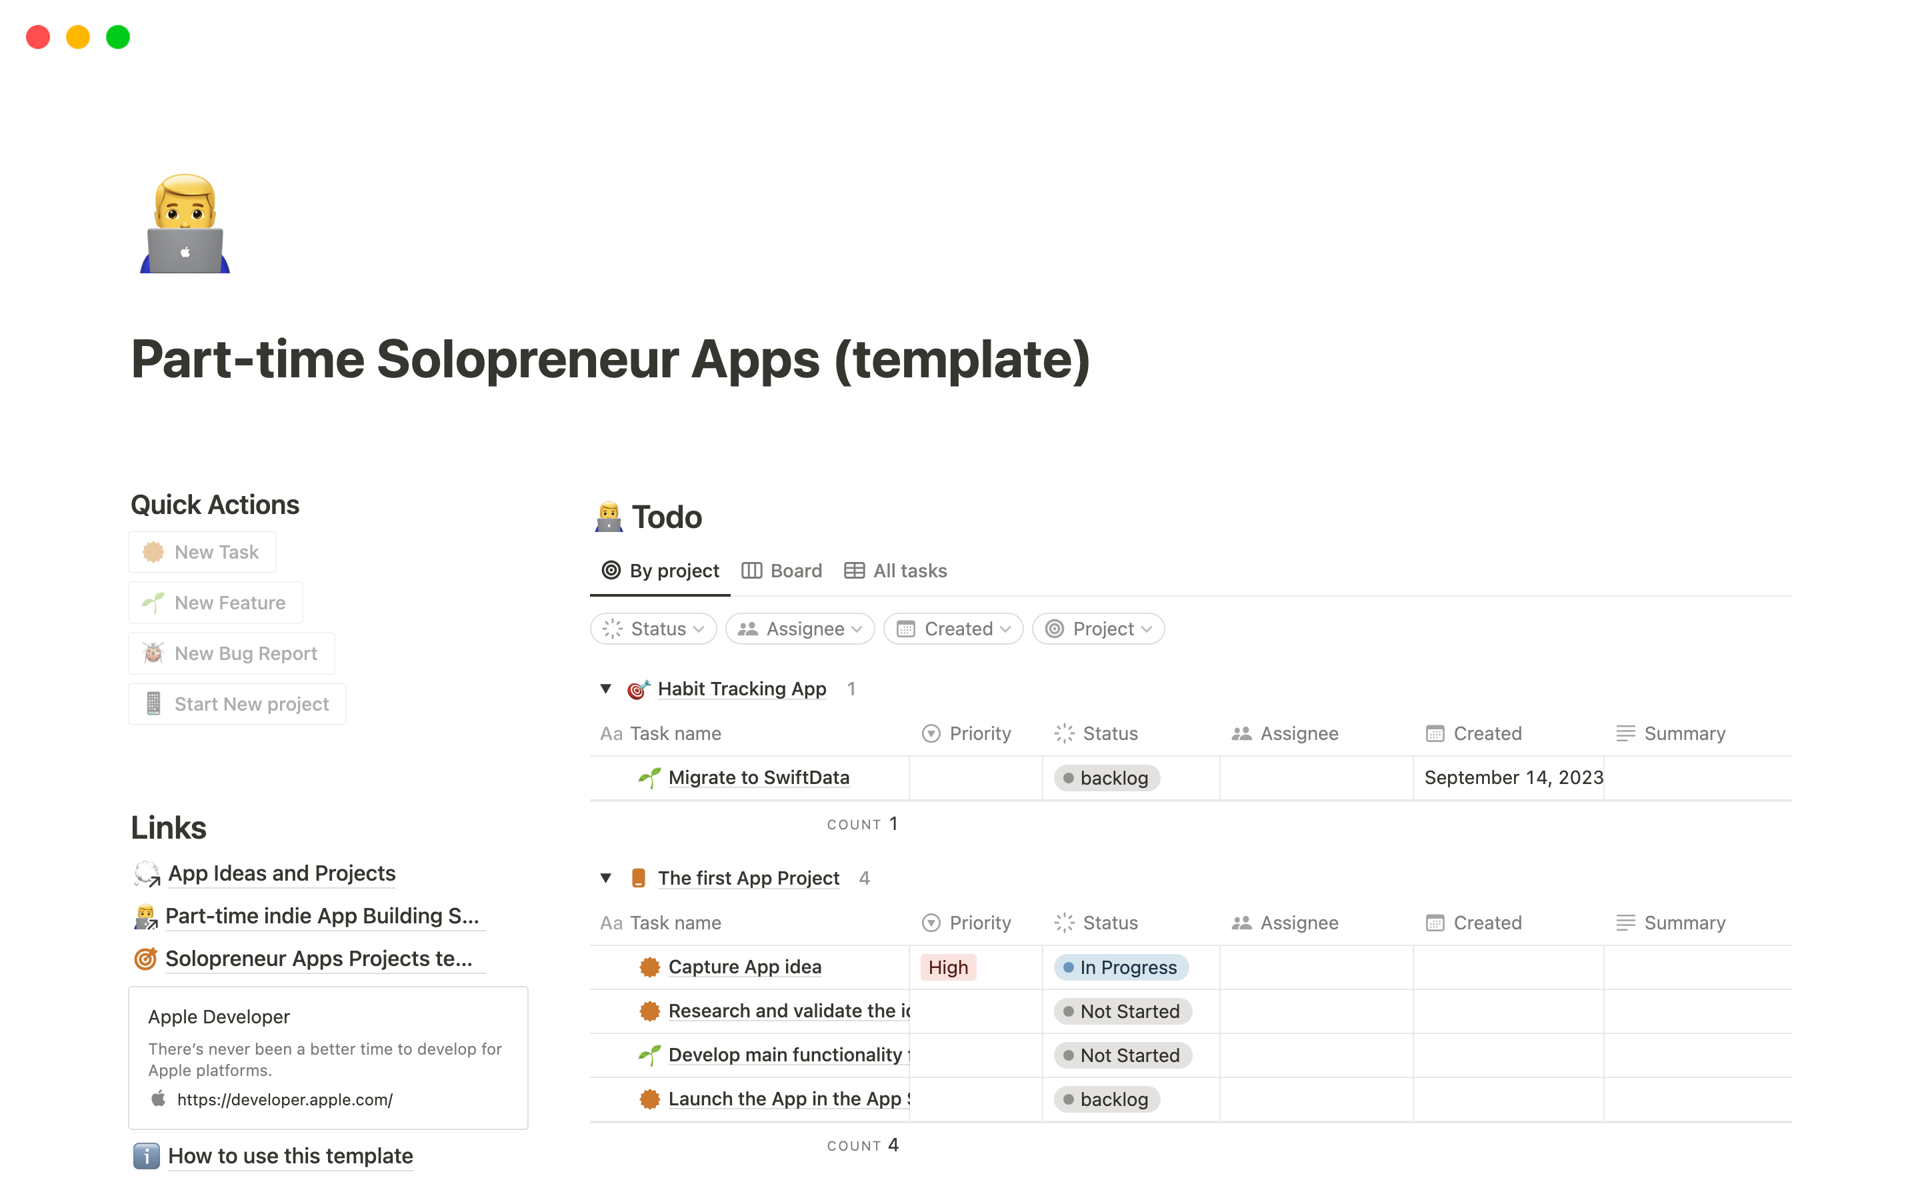 Uma prévia do modelo para Part-time Solopreneur Apps 